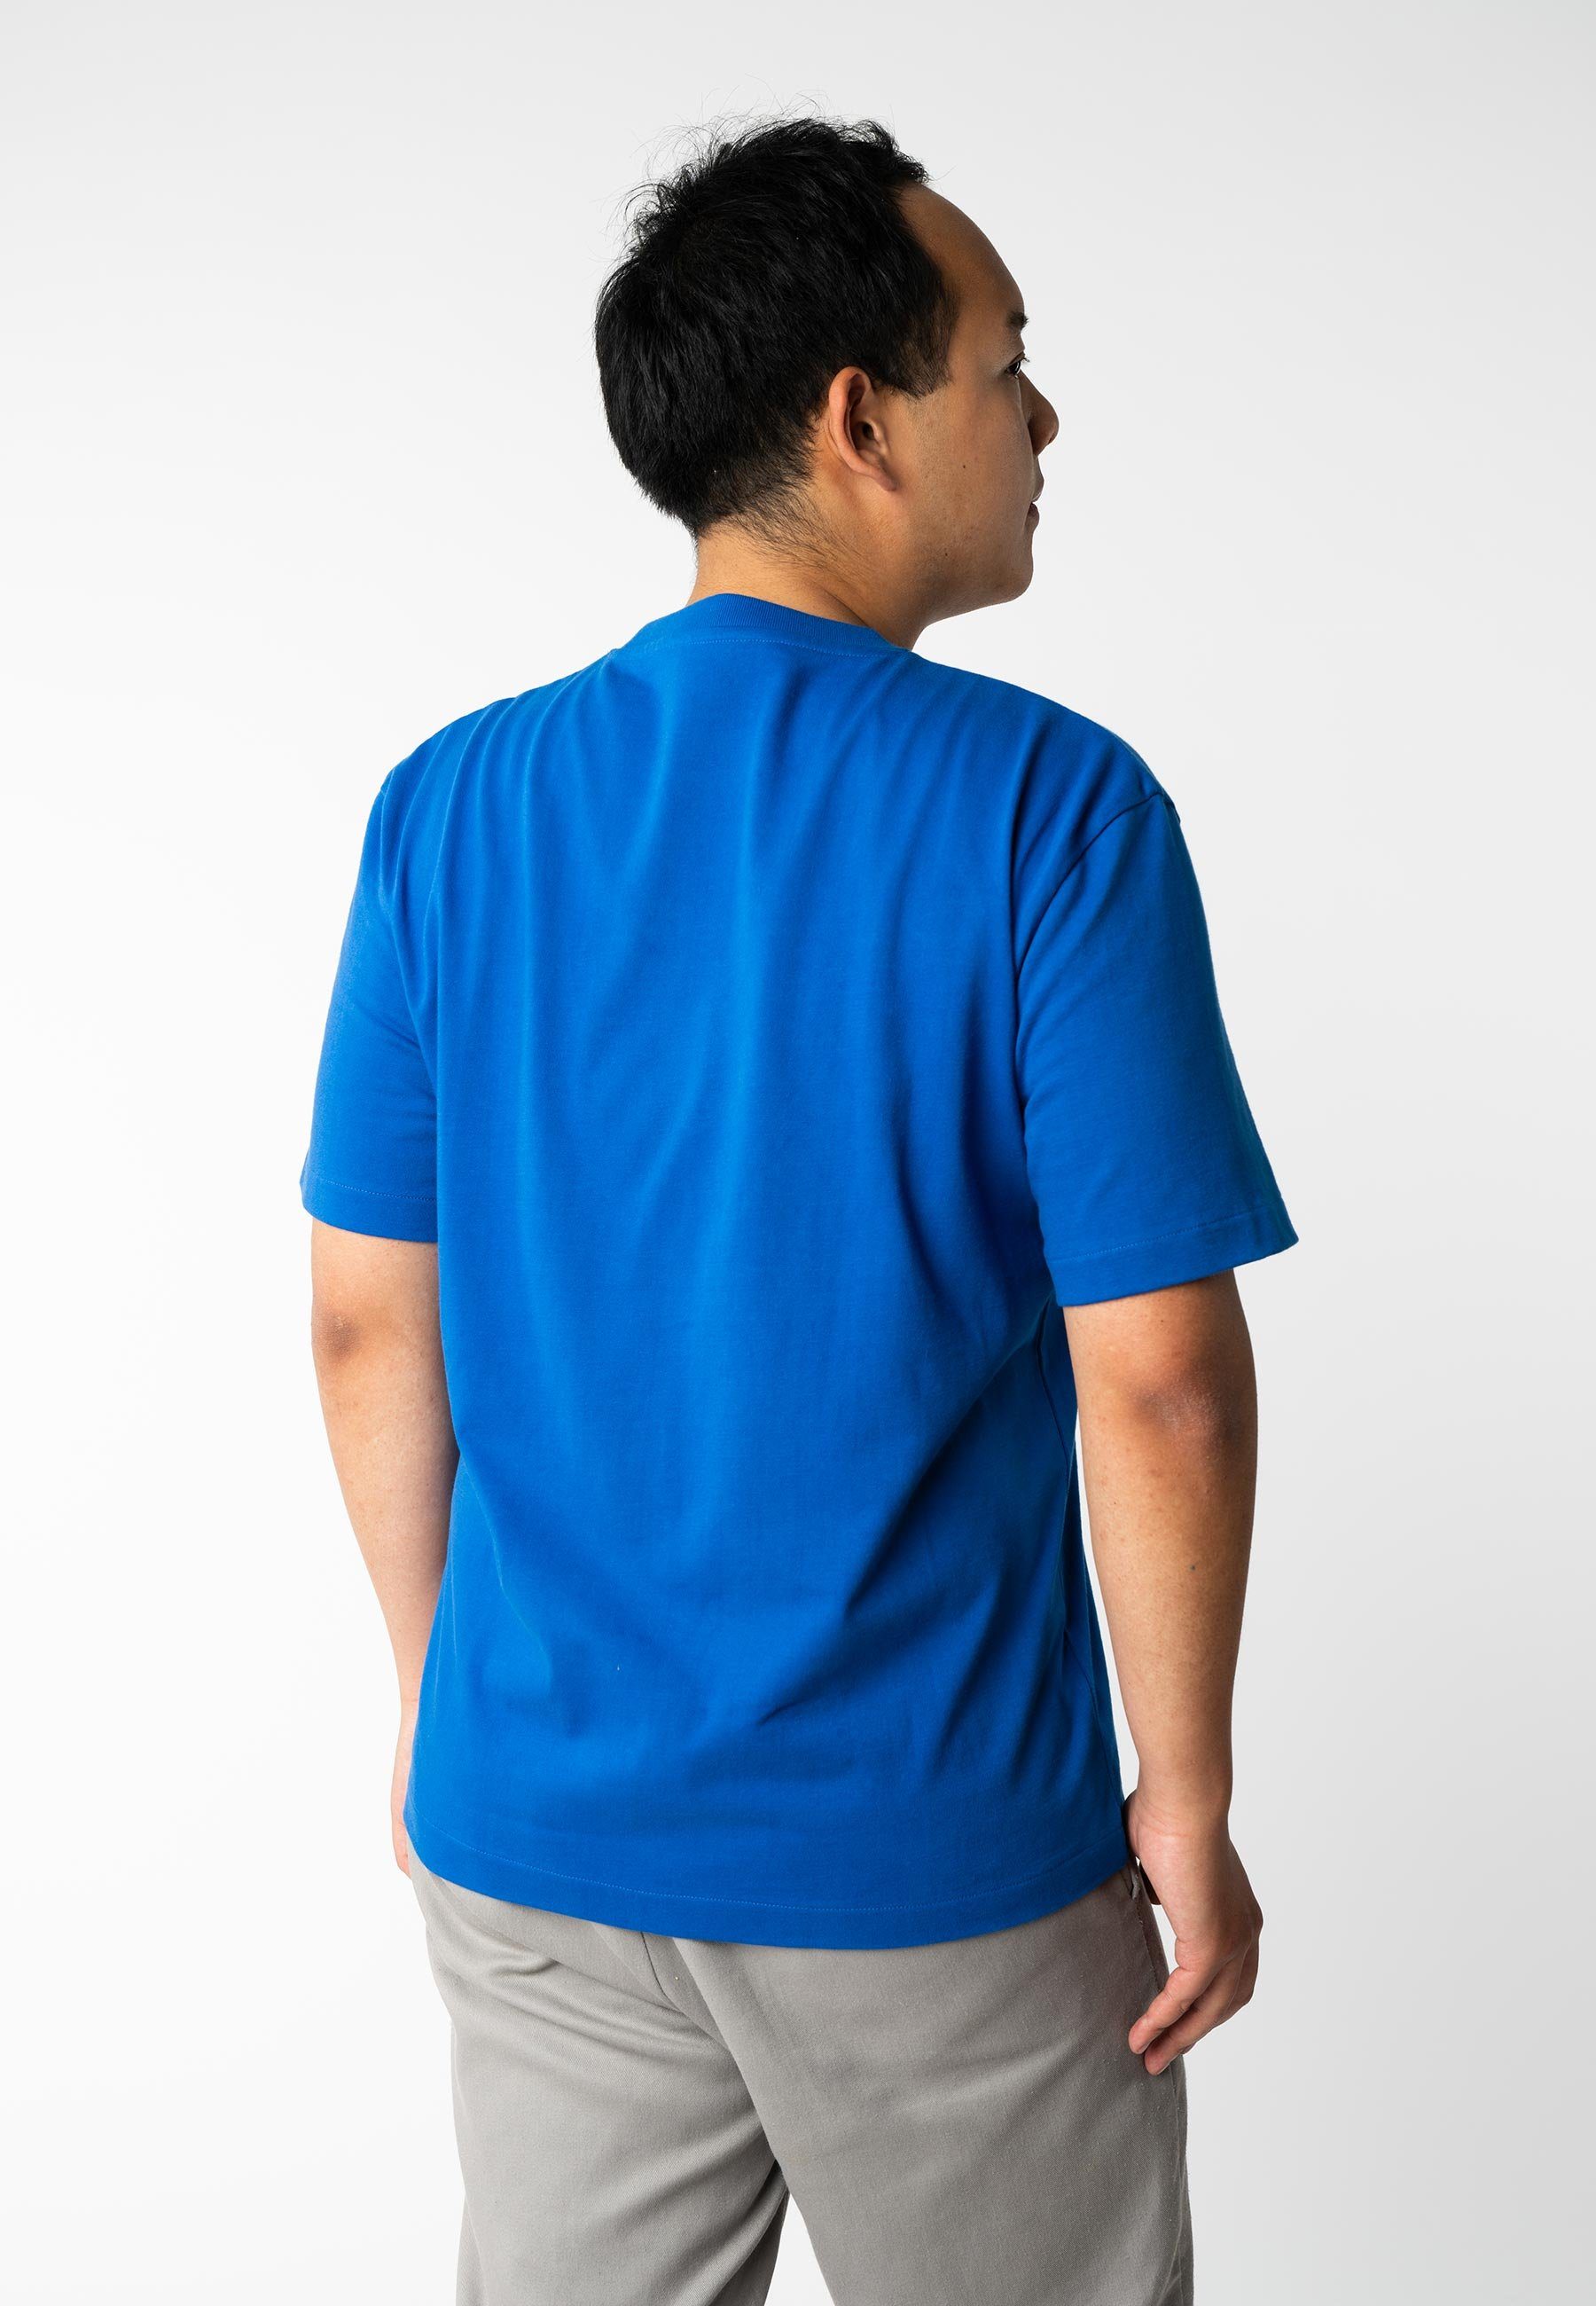 MELA Kurzarmshirt blue Rippbündchen BHAJAN T-Shirt schwer vibrant